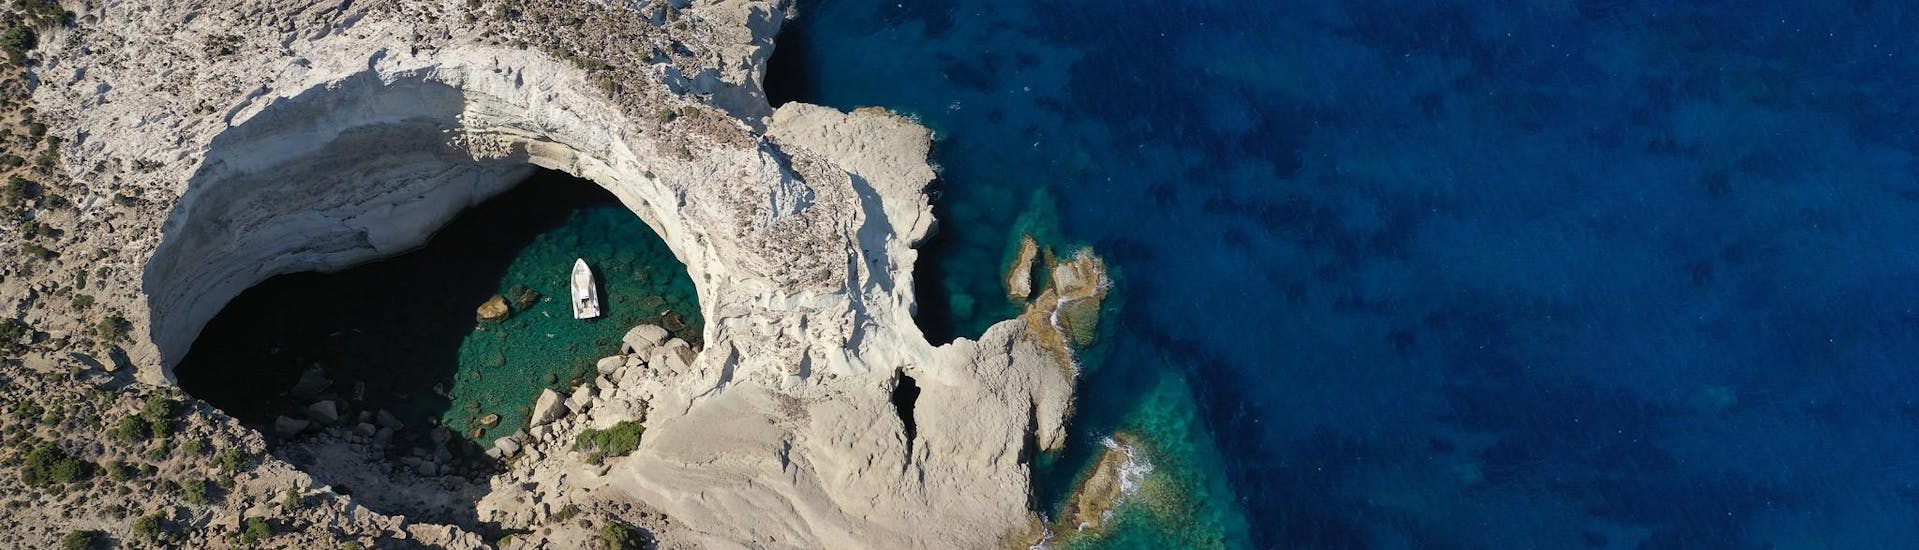 Vue aérienne des grottes de Sikia, un site merveilleux que vous pouvez visiter lors d'une excursion en bateau à Milos.